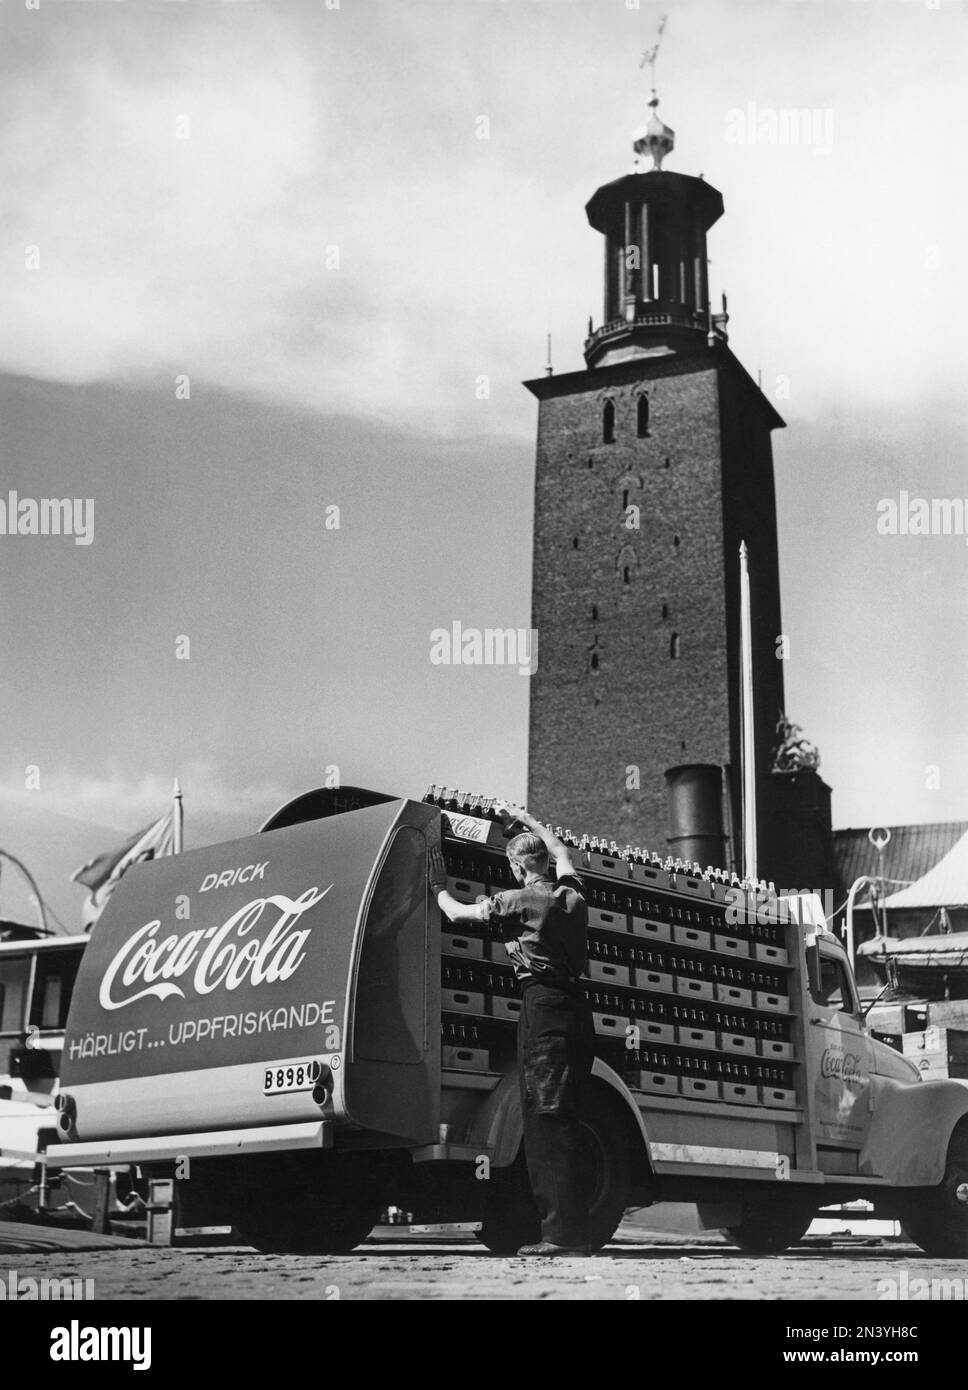 Coca cola negli anni '1950s. Nel 1 gennaio 1953 la Coca-Cola è stata inizialmente autorizzata ad essere fabbricata e venduta in Svezia, essendo precedentemente limitata dalle vendite in Svezia, poiché il contenuto di Coca-Cola includeva sostanze vietate come l'acido fosforico e la caffeina. Uno dei primi camion di distribuzione della birreria Mineralvattenfabriken tre Kronor caricato con bottiglie di Coca-Cola raffigurate a Stoccolma con il municipio sullo sfondo. Veicoli Volvo modello L34 modificati e verniciati in rosso per l'uso esclusivo sui veicoli Coca-Cola. Coca-Cola era presto con la pubblicità sui loro veicoli. Svezia 1953 Foto Stock